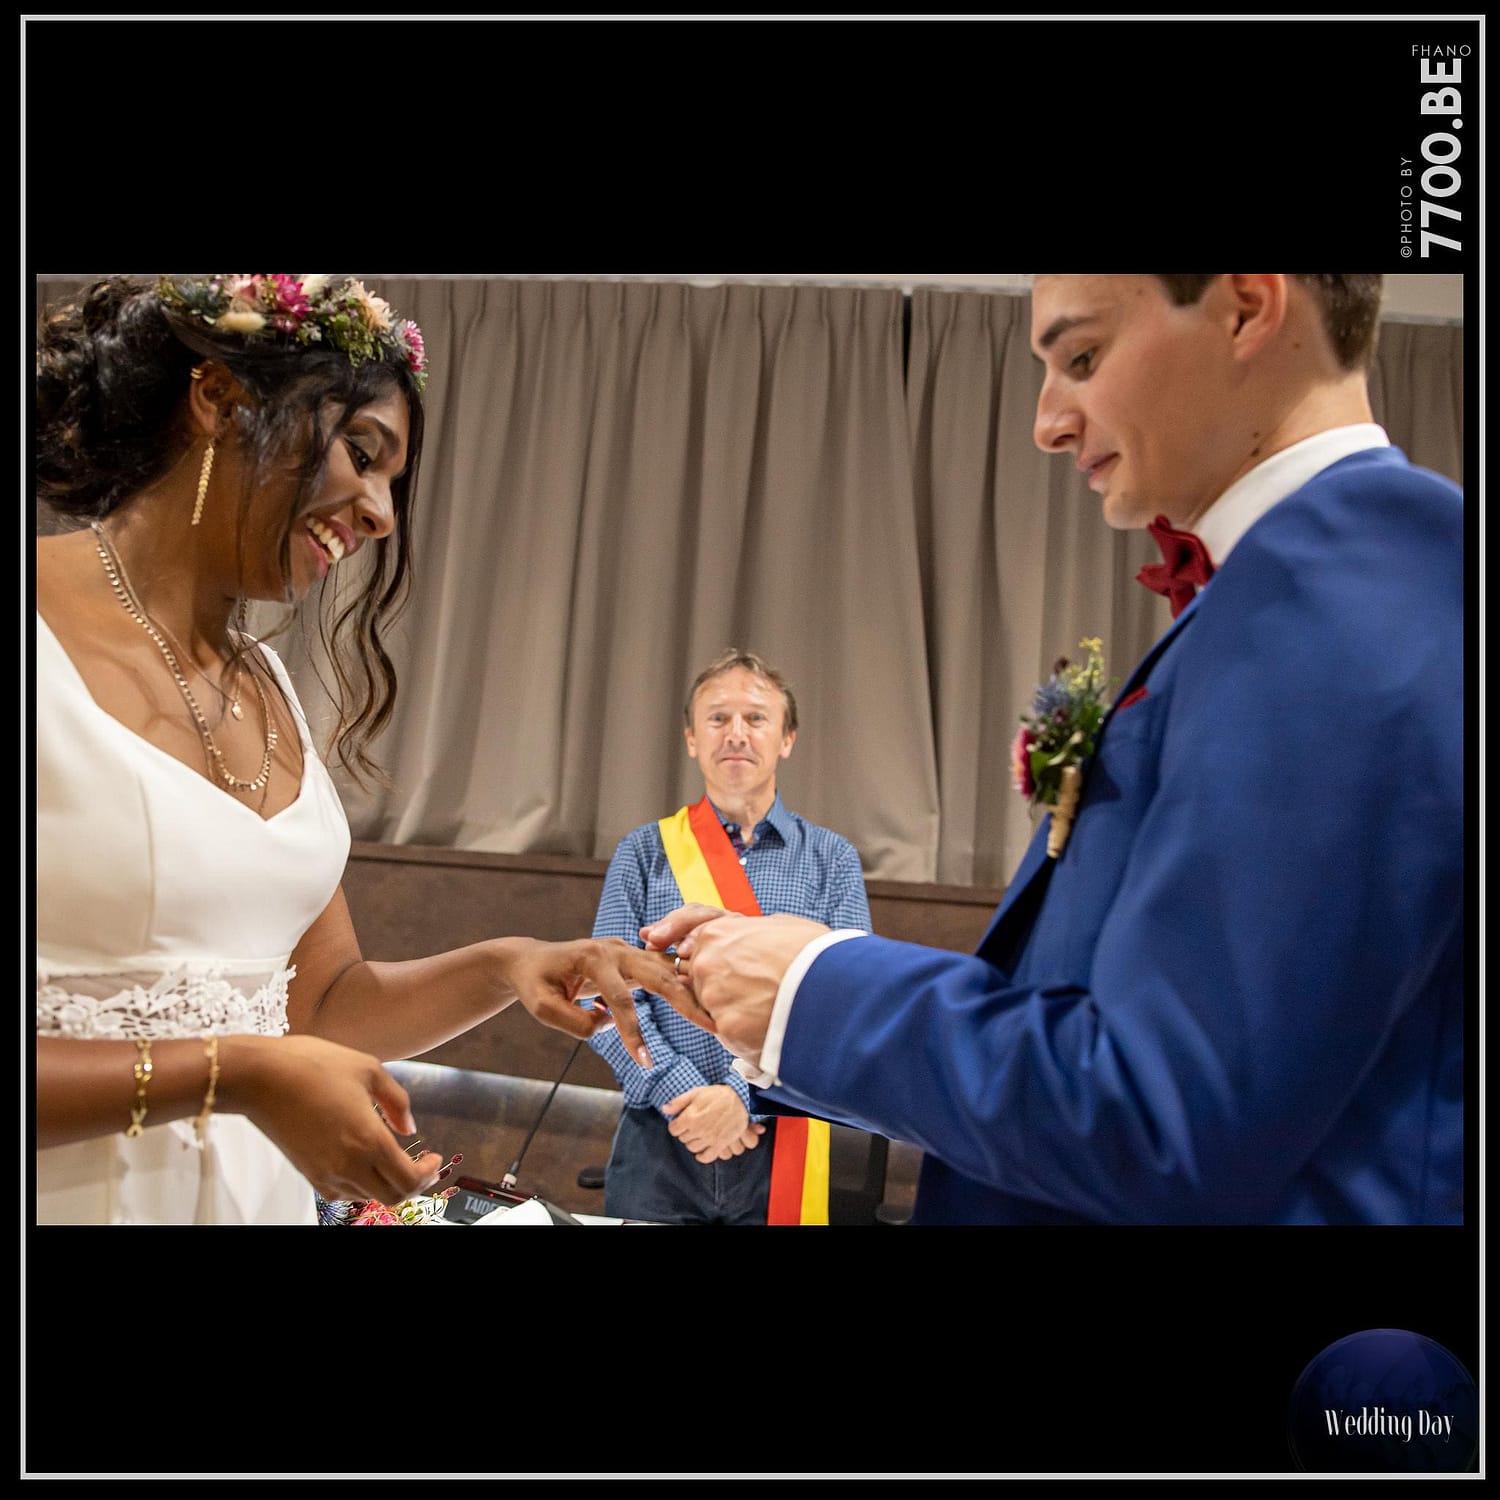 Quelques images issues du mariage réalisé par le 𝚂𝚝𝚞𝚍𝚒𝚘 𝟽𝟽𝟶𝟶.𝙱𝙴 𝙲𝚑𝚎𝚣 𝙵𝚑𝚊𝚗𝚘.𝚎𝚞 𝑃ℎ𝑜𝑡𝑜𝑠 📷 𝑉𝑖𝑑𝑒𝑜 🎥 𝐷𝑟𝑜𝑛e 『*****』 📸 FHANO 𝕡𝕙𝕠𝕥𝕠𝕘𝕣𝕒𝕡𝕙𝕖 & 𝕧𝕚𝕕é𝕠 🎥 CARO 𝕣𝕦𝕤𝕙 𝕧𝕚𝕕é𝕠 & 𝕡𝕙𝕠𝕥𝕠 💎👉 𝕤𝕥𝕦𝕕𝕚𝕠 𝟟𝟟𝟘𝟘.𝔹𝔼 👈💎 https://mon-photographe-de-mariage.com